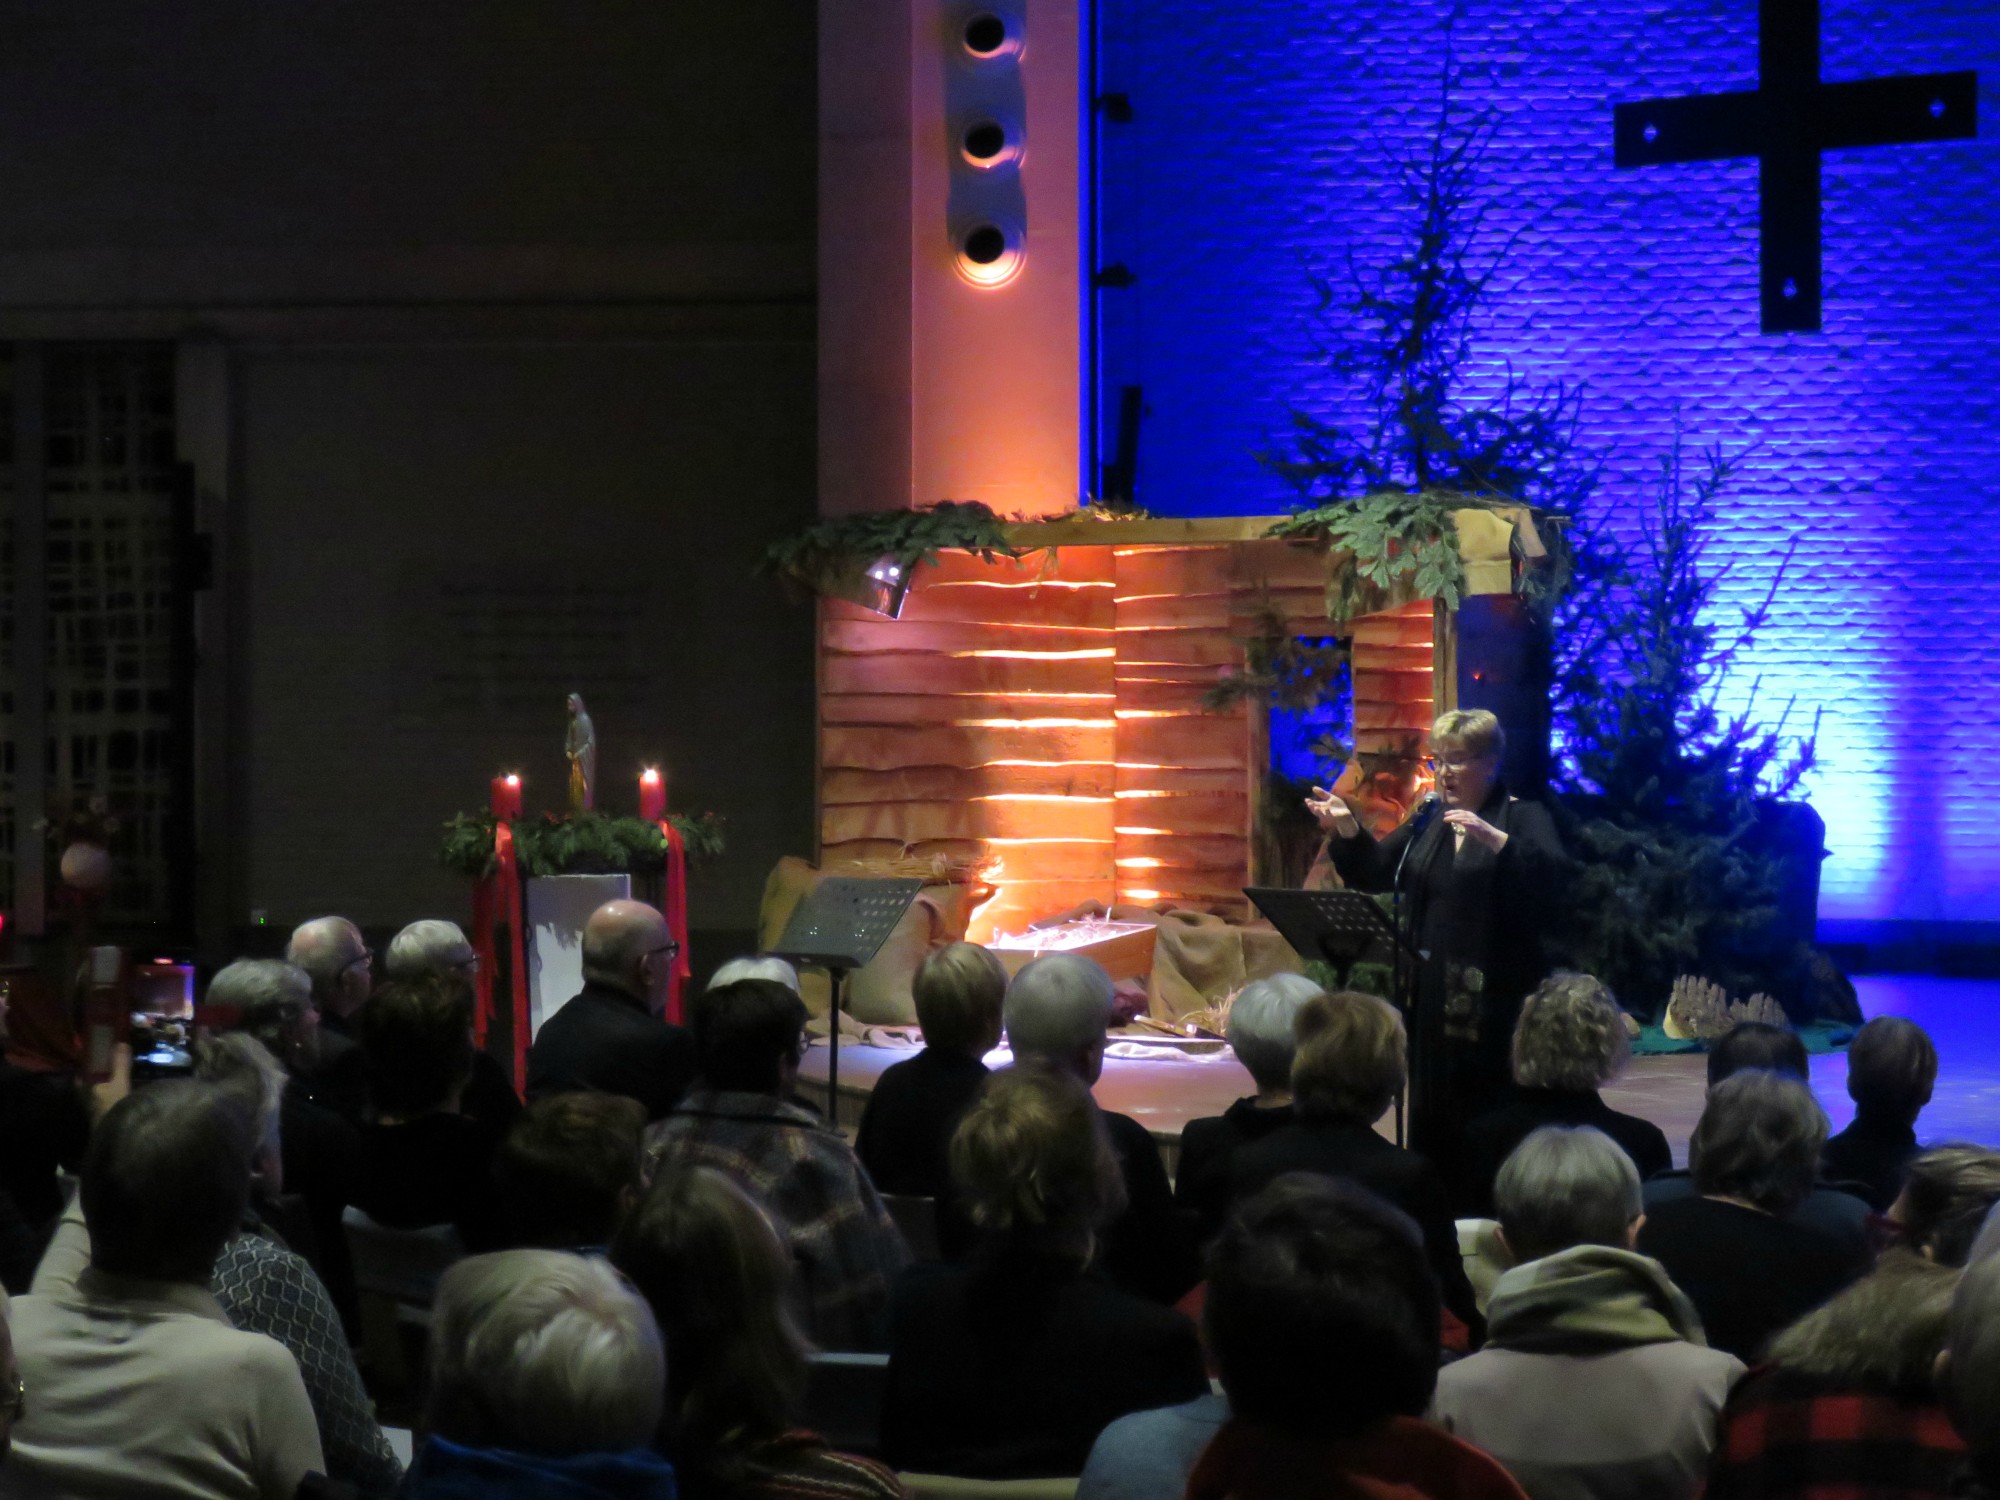 Meezing kerstconcert - Ortolaan - Klankjorum - Sint-Annakoor - Joannes Thuy - Myriam Baert - Sint-Anna-ten-Drieënkerk, Antwerpen Linkeroever